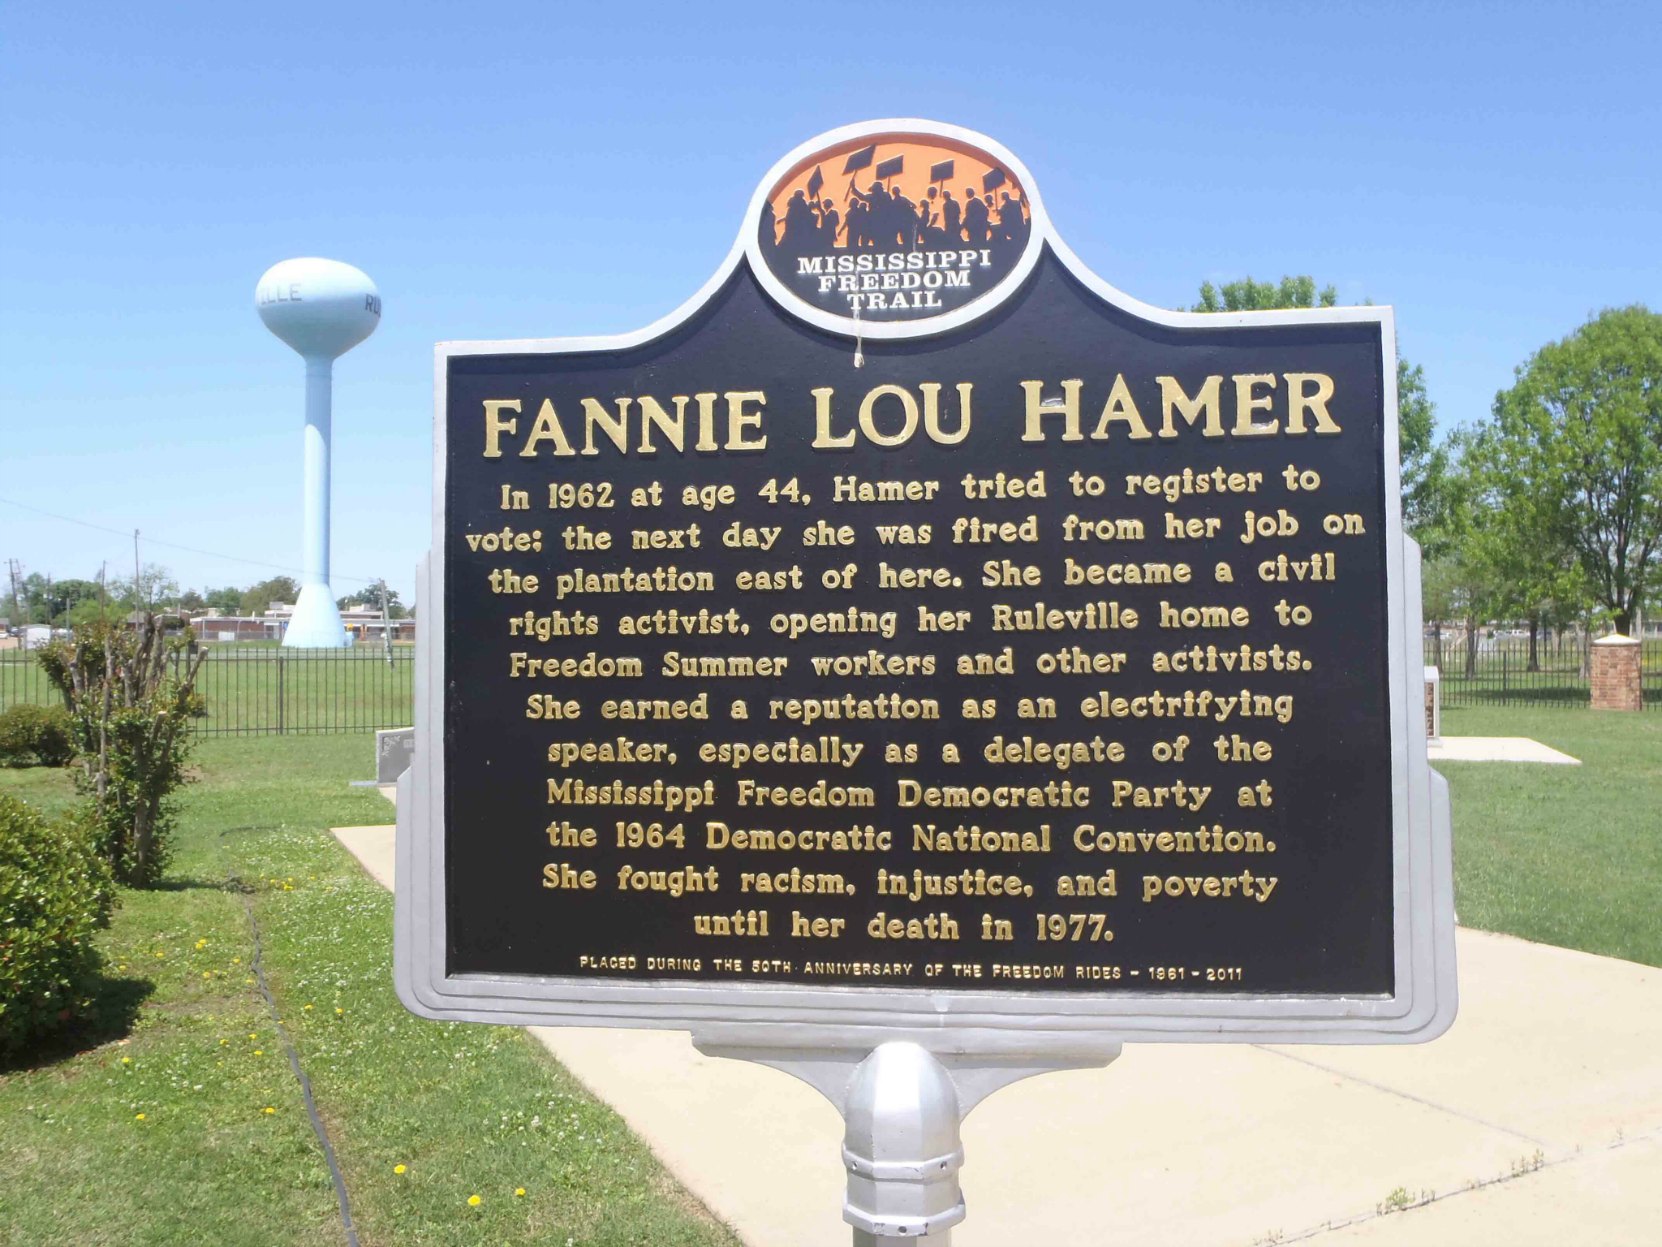 Mississippi Freedom Trail marker commemorating Fannie Lou Hamer, Ruleville, Mississippi.